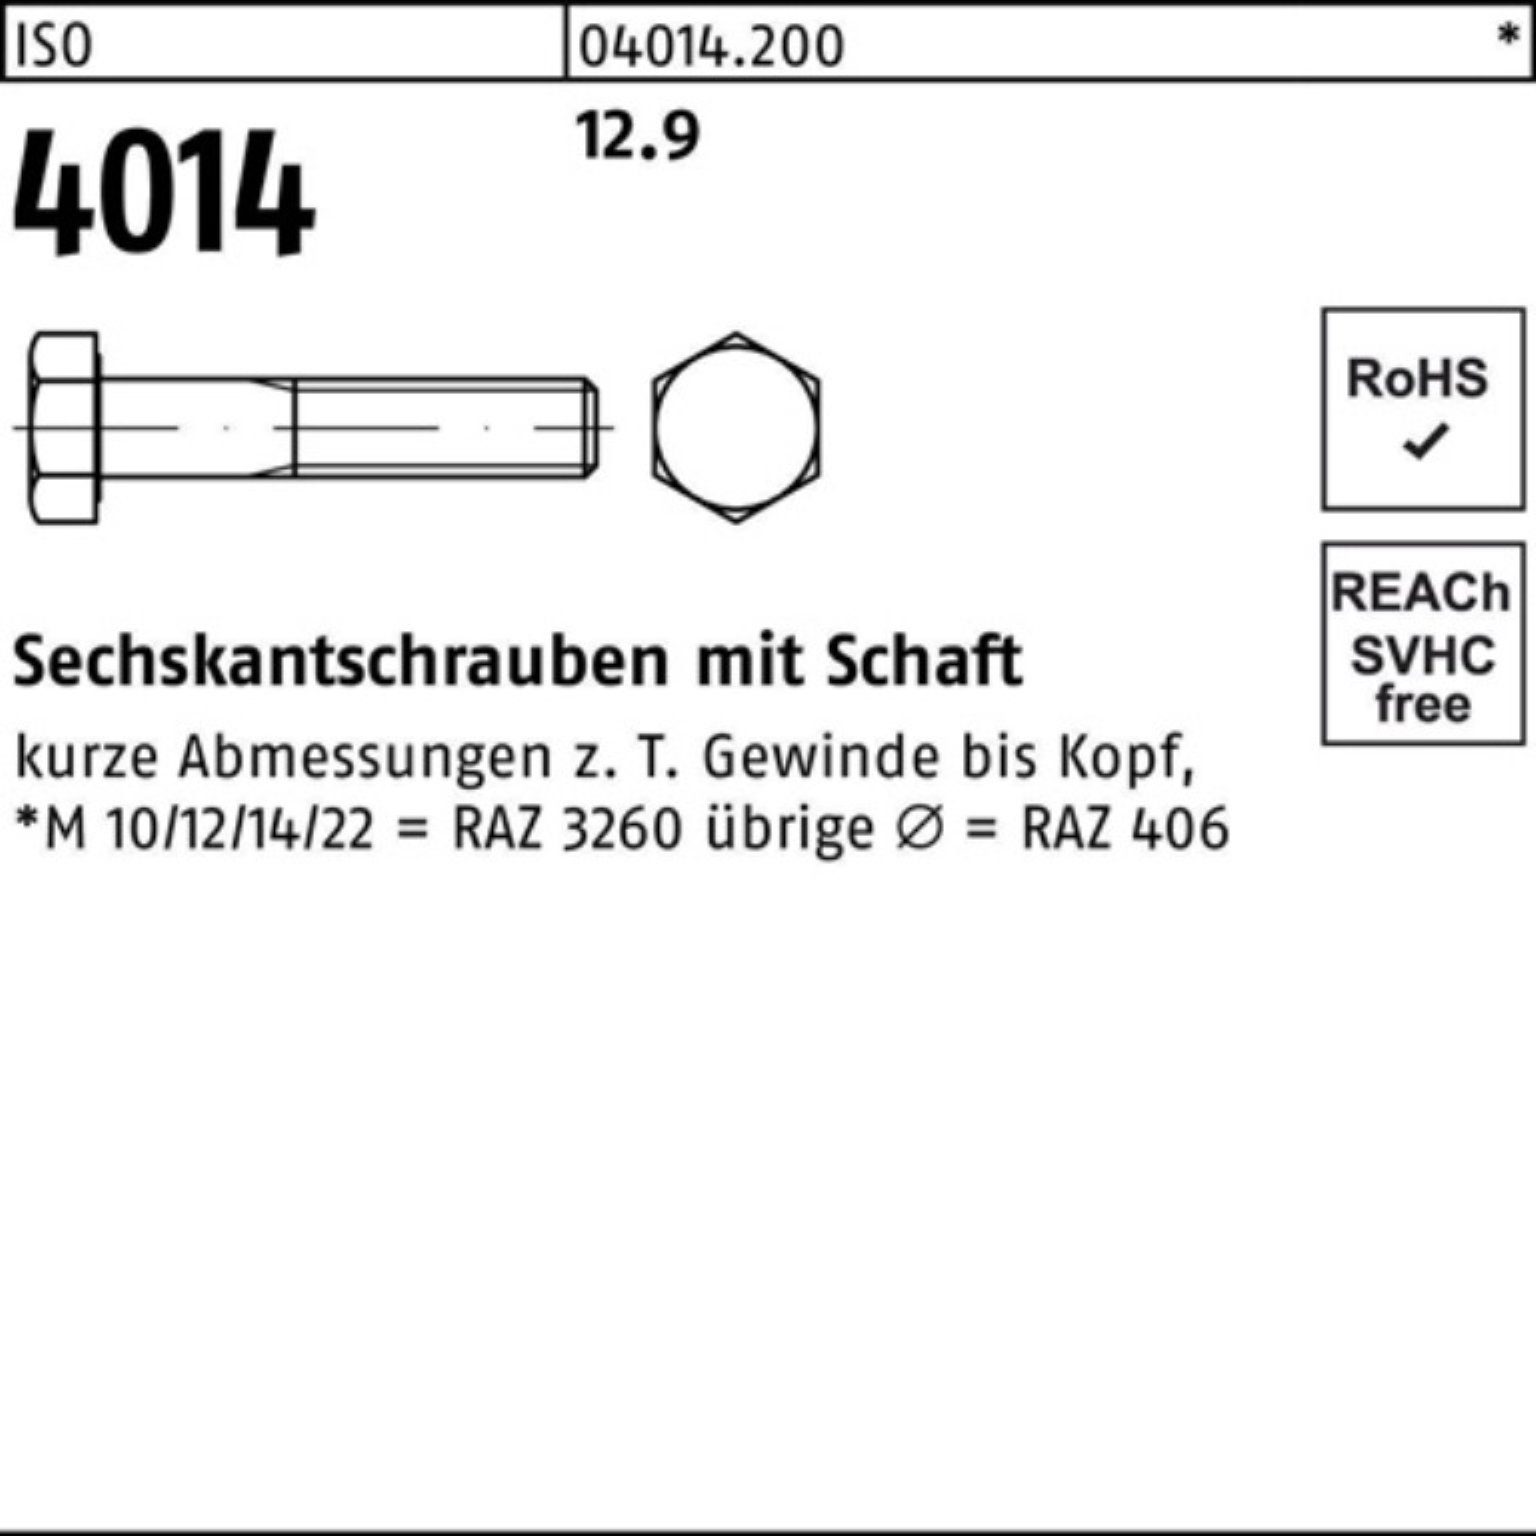 Stück Sechskantschraube Bufab Schaft ISO 80 IS Sechskantschraube 25 Pack M24x 100er 4014 12.9